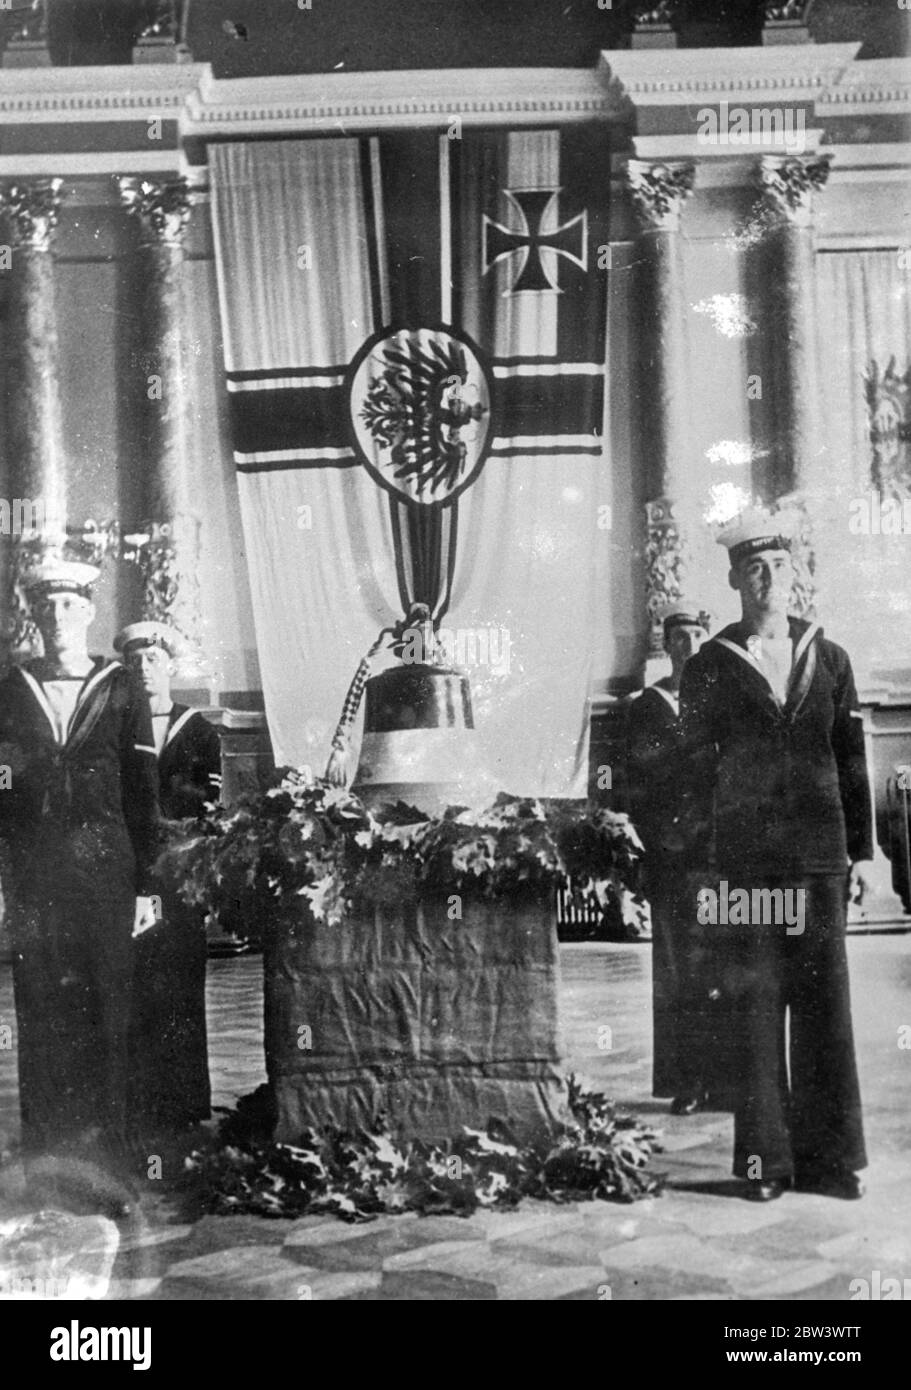 La Marine britannique remet la cloche de Hindenburg à la Marine allemande . La cloche du navire de guerre allemand Hindenburg qui a été coulé à Scapa Flow a été remise à la marine allemande de Kiel par le croiseur britannique Neptune . La cloche a été reçue par le général - amiral Erich Raeder , commandant - en chef de la Marine allemande . Photos : marins britanniques de la garde debout Neptune au-dessus de la cloche Hindenburg à Kiel . 17 août 1936 Banque D'Images